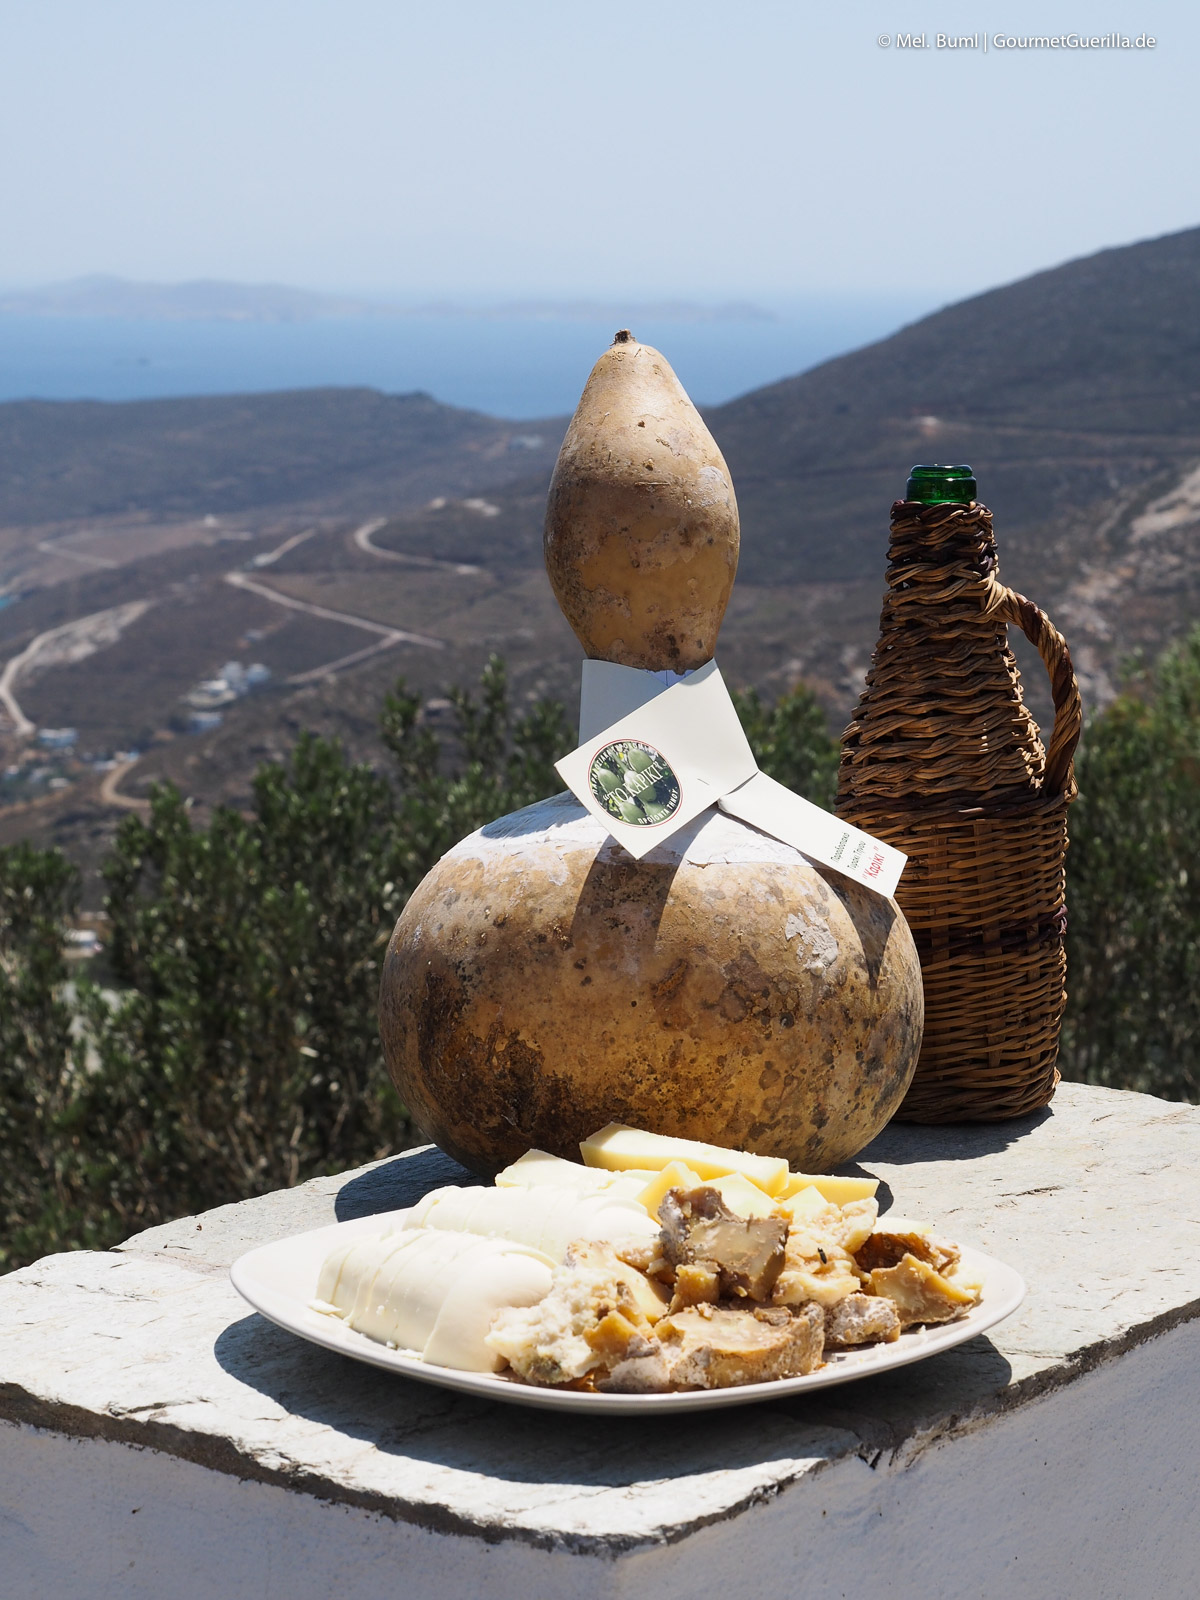 Kapiki Käse Reisebericht Tinos Foodpath griechische Insel Kykladen Griechenland | GourmetGuerilla.de